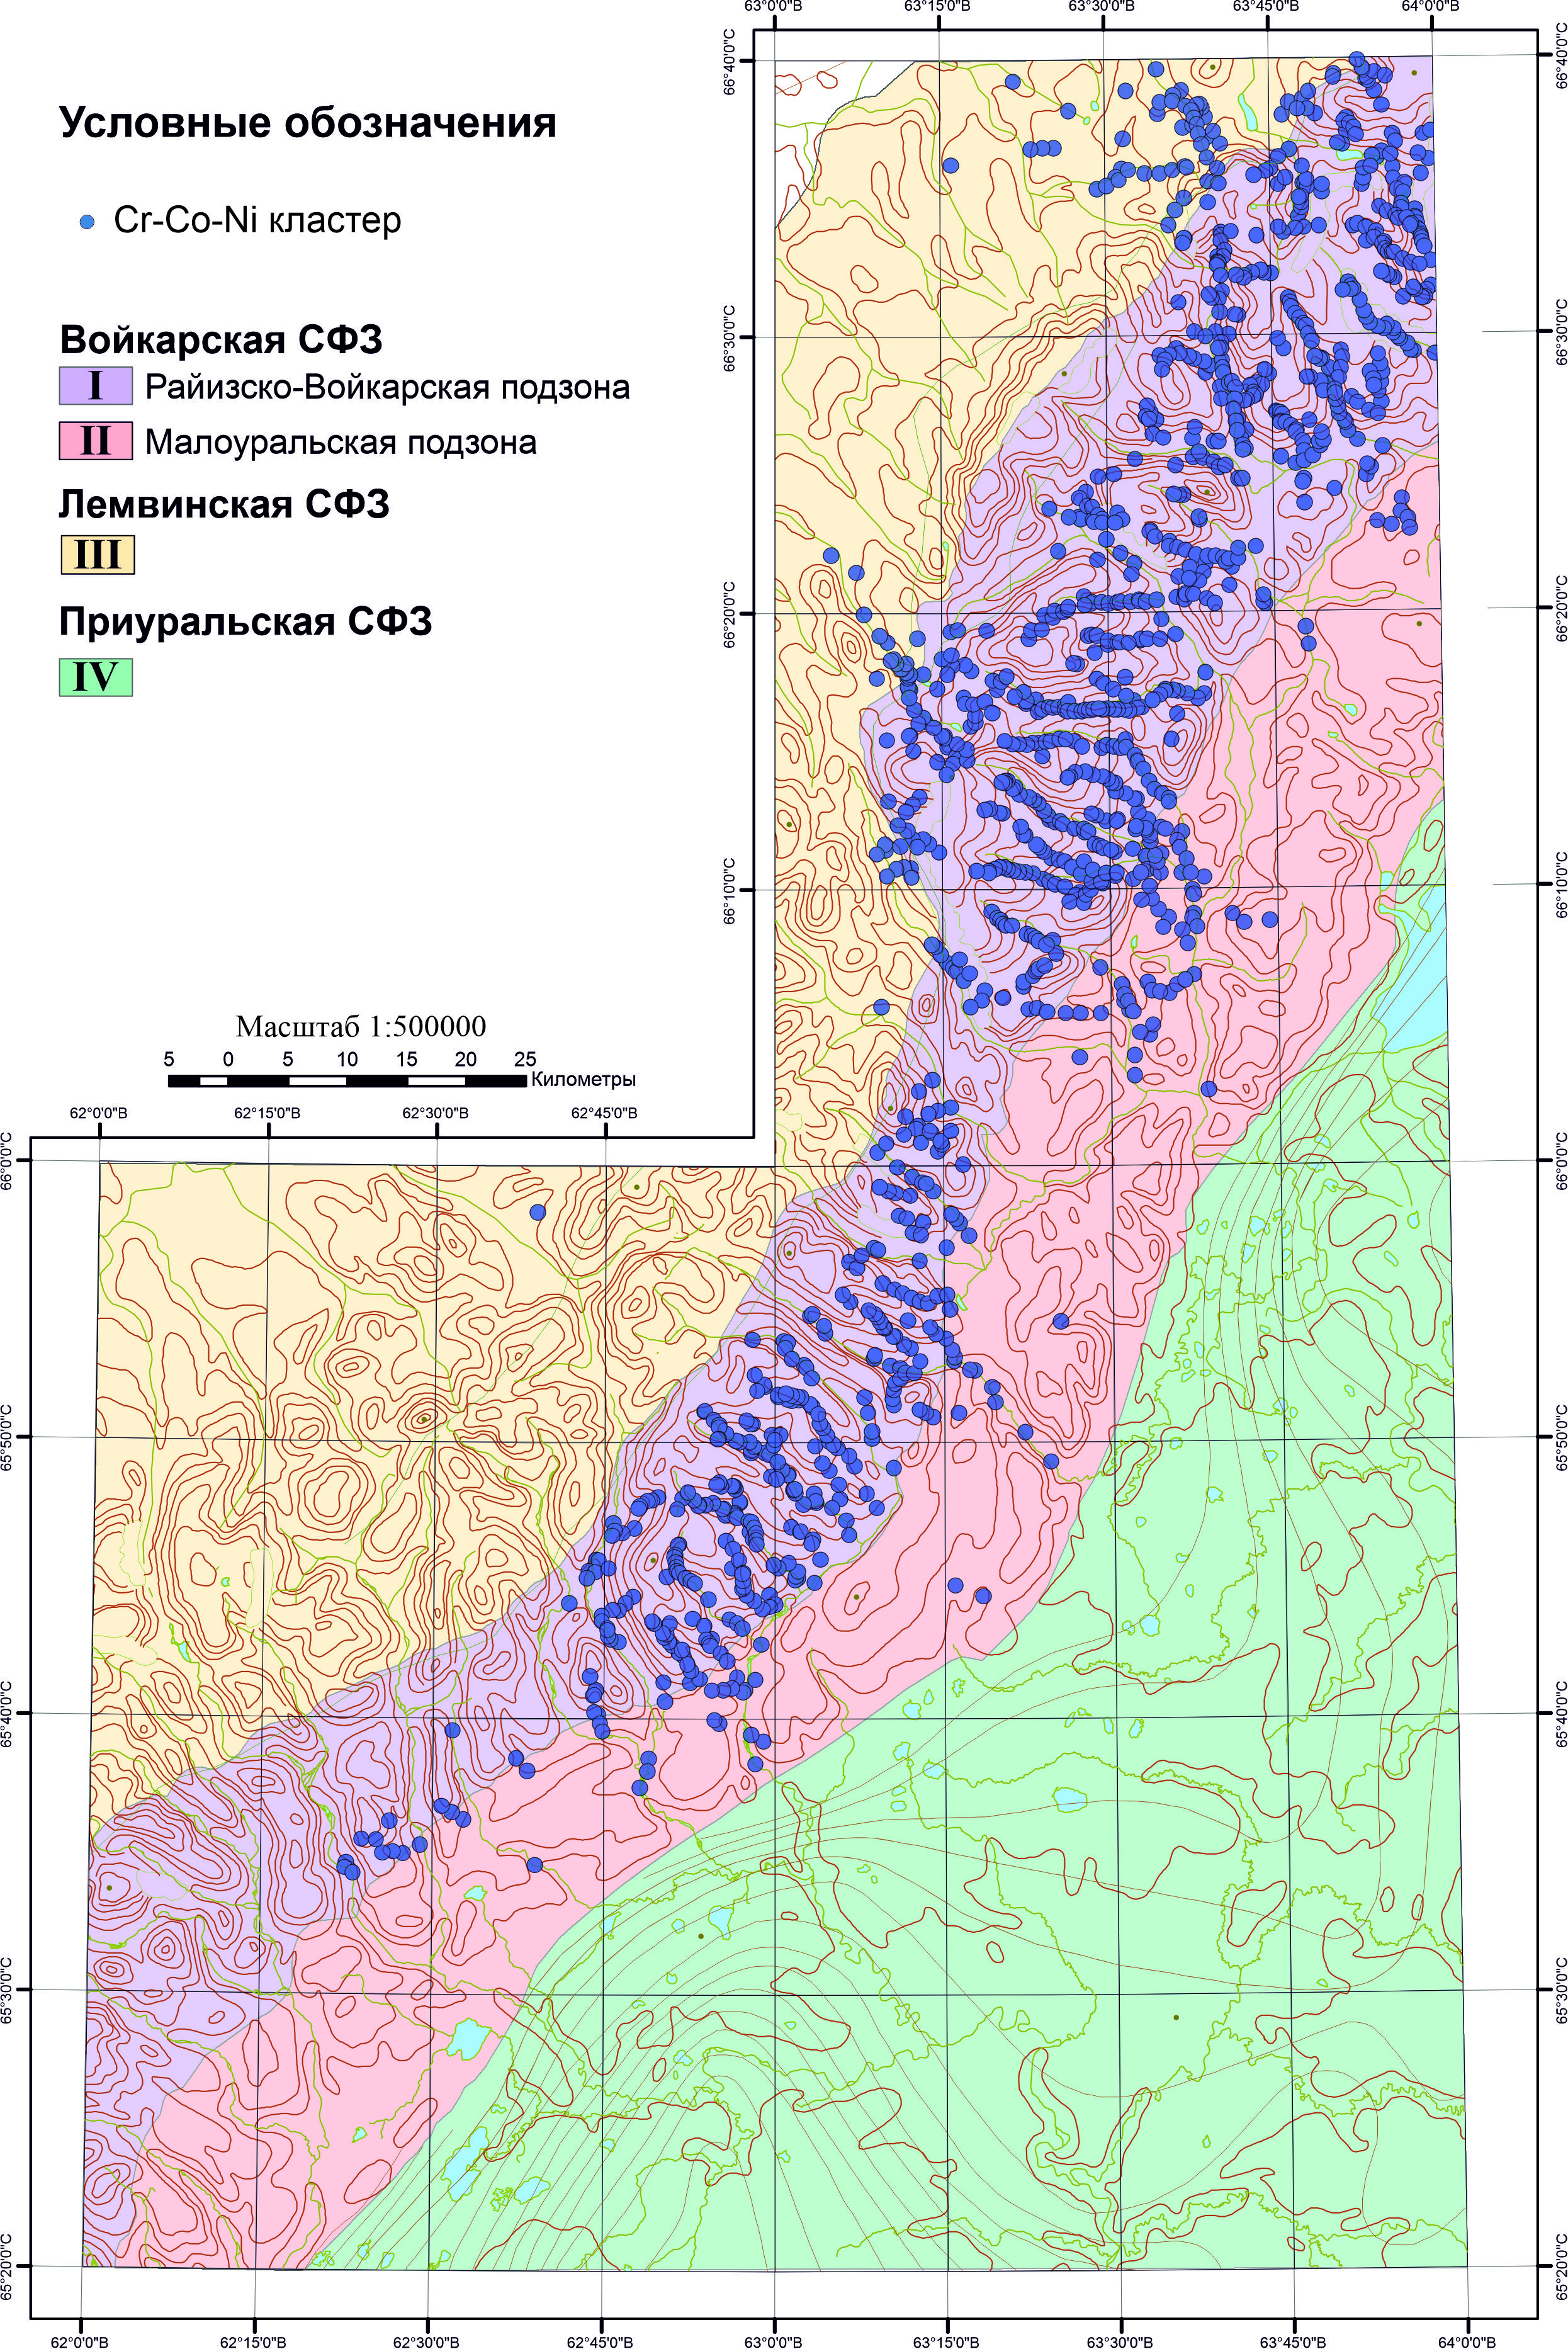 Соотношение Cr-Ni-Co геохимического кластера (Кластер №1) и геологии исследуемого района на упрощенной геологической схеме 